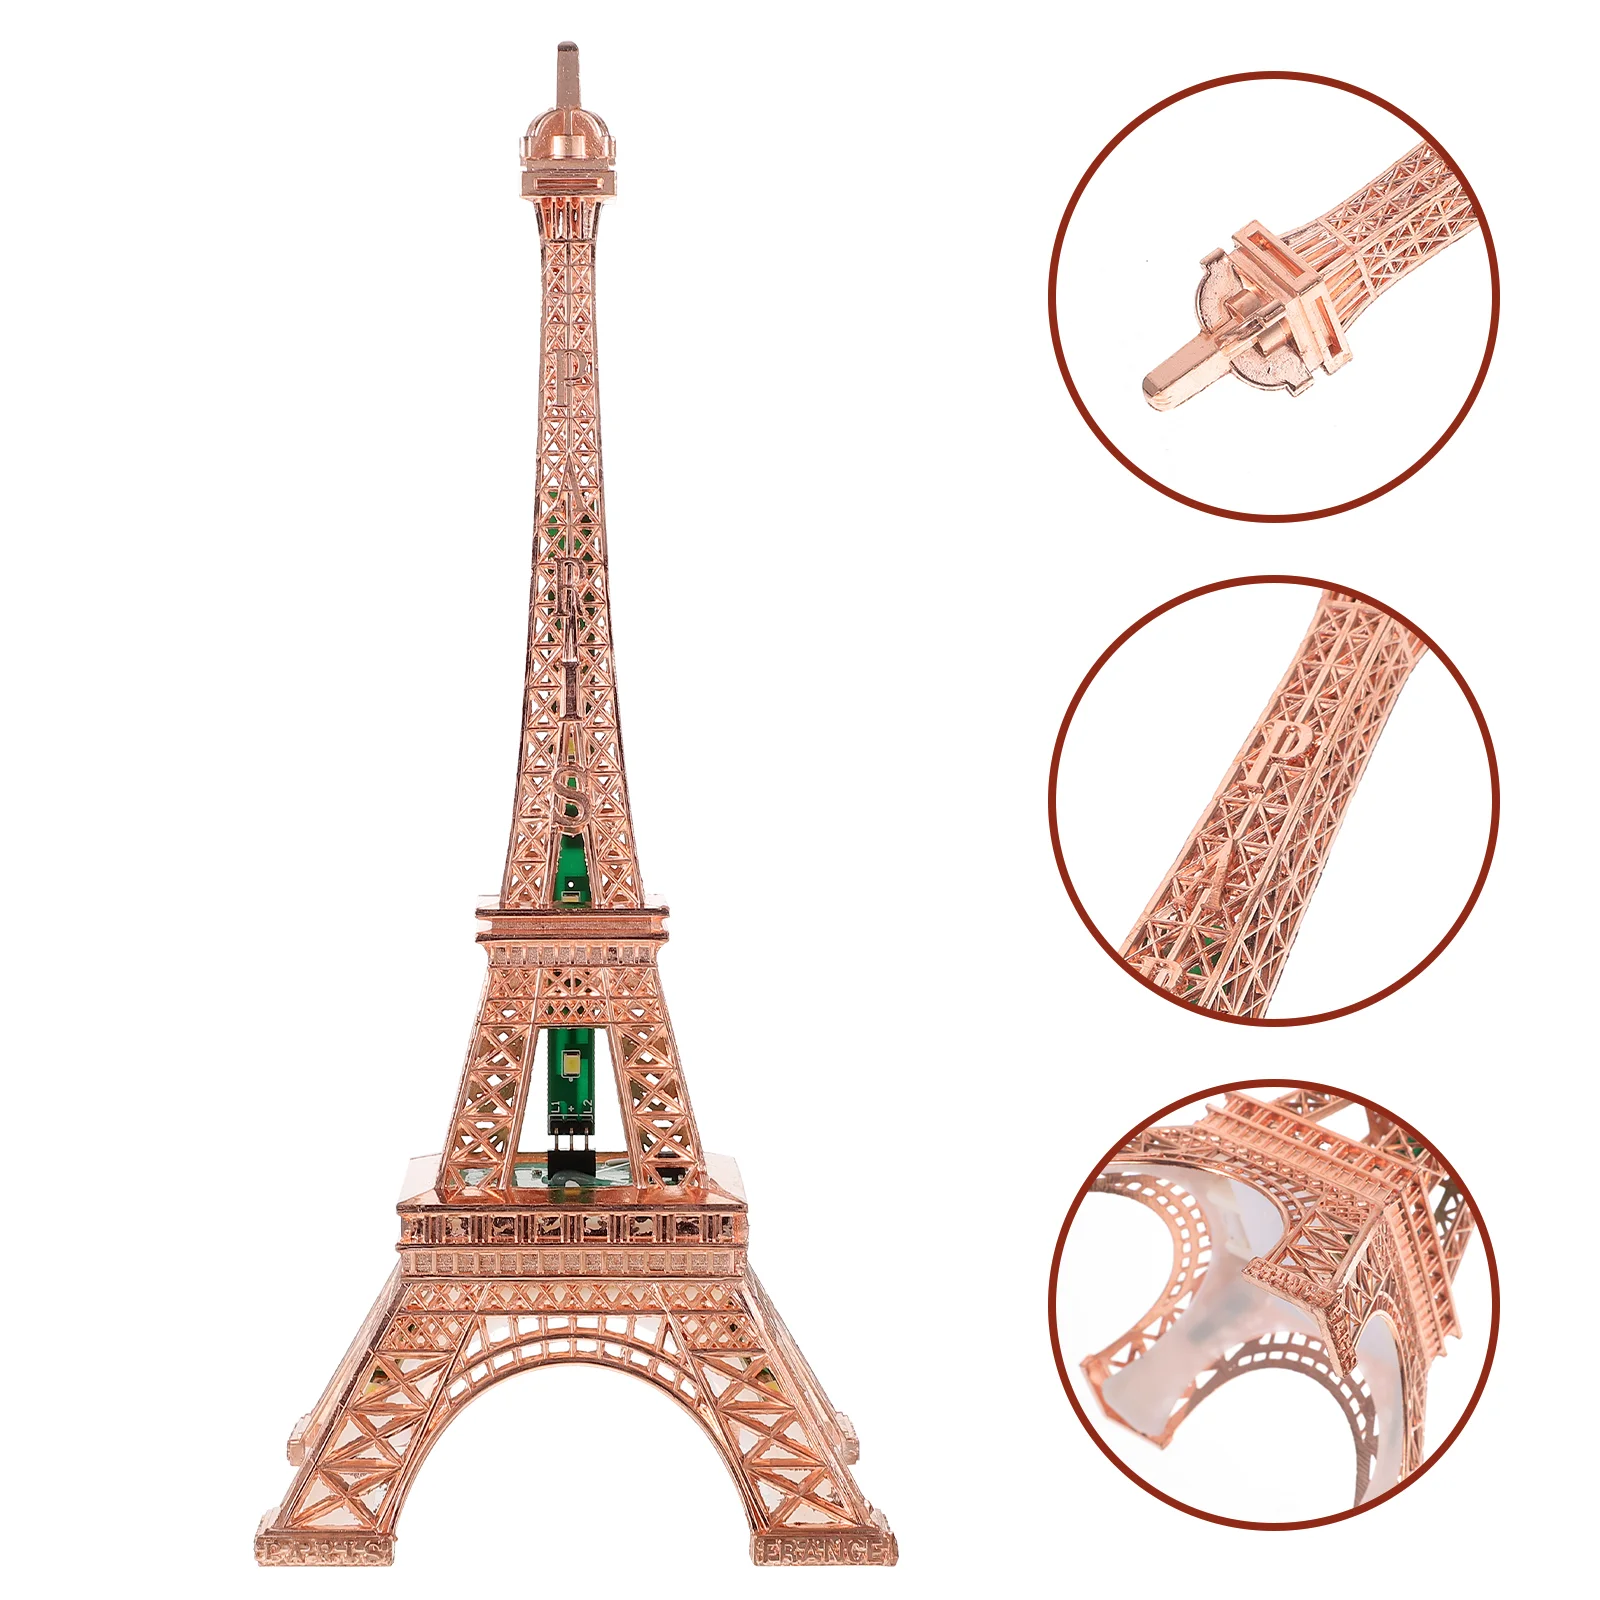 

Led Light Paris Eiffel Tower Wedding Decoration Architecture Metal Crafts Vintage Model Desktop Decoration Travel Souvenirs